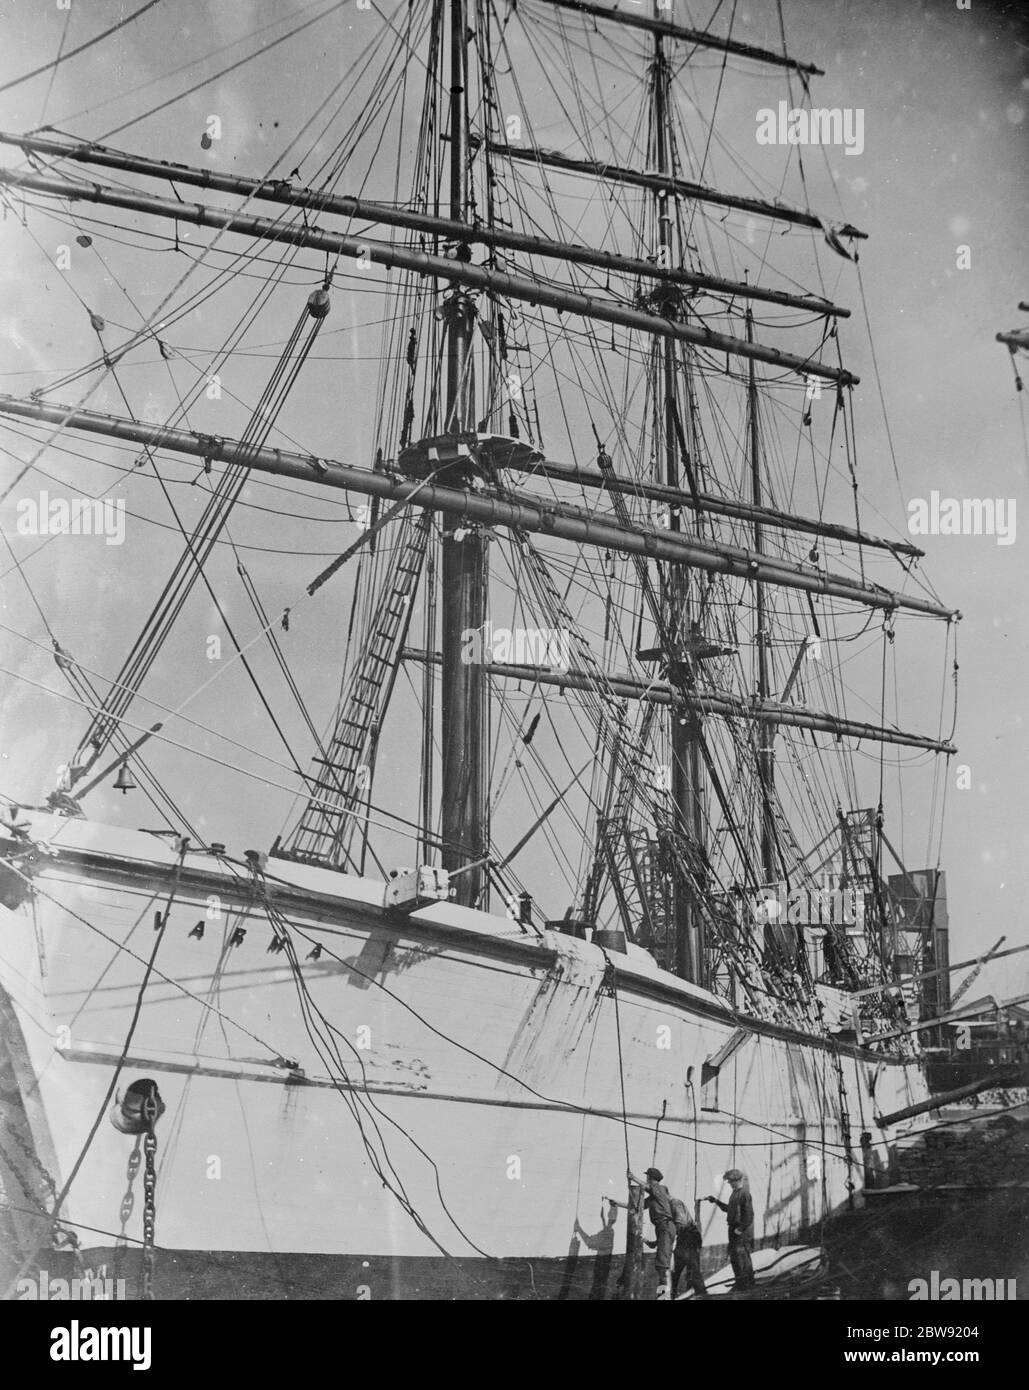 Die finnische Windjammer "Varma" , einer der letzten Rasse der großen kommerziellen Segelschiffe , wird in der Regent ' s Canal Docks , Stepney neu lackiert. 1936 Stockfoto